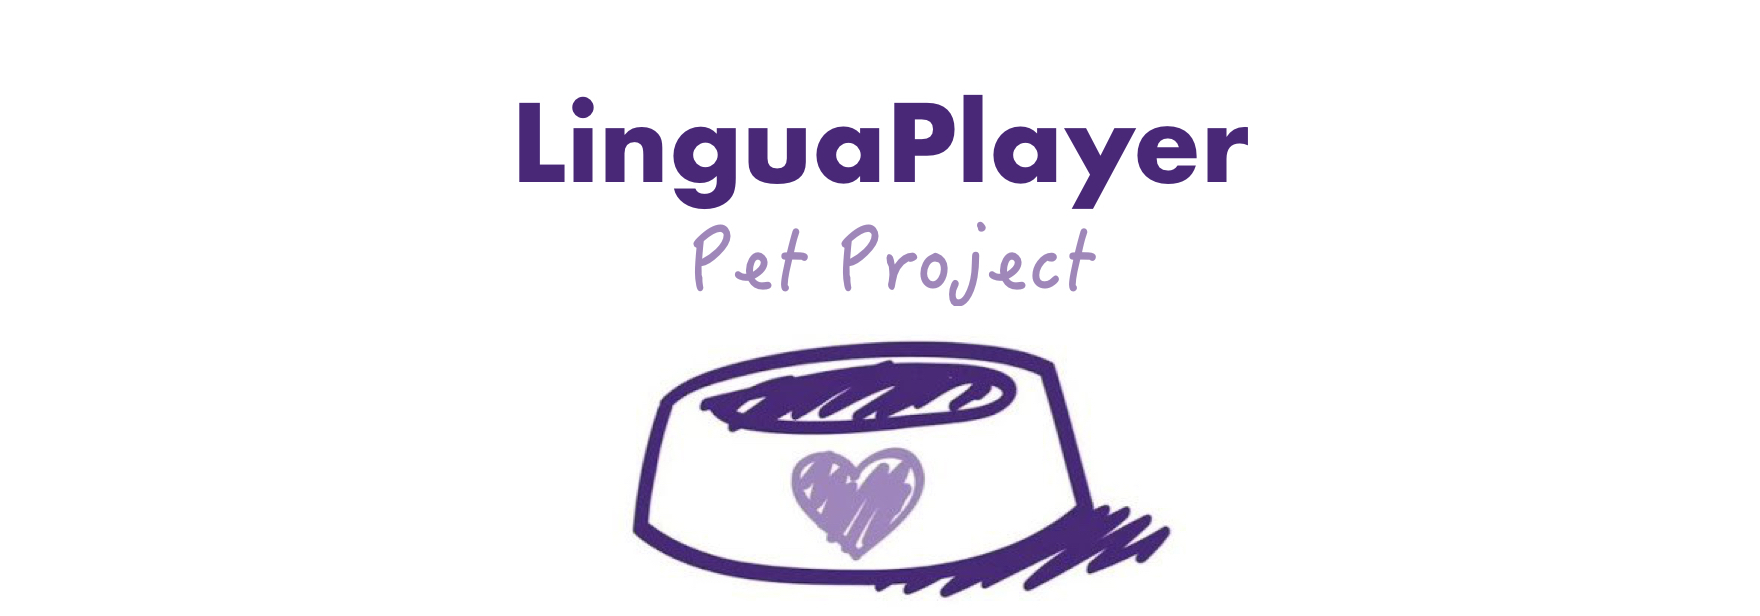 Мой pet-проект: видеоплеер с переводимыми субтитрами LinguaPlayer